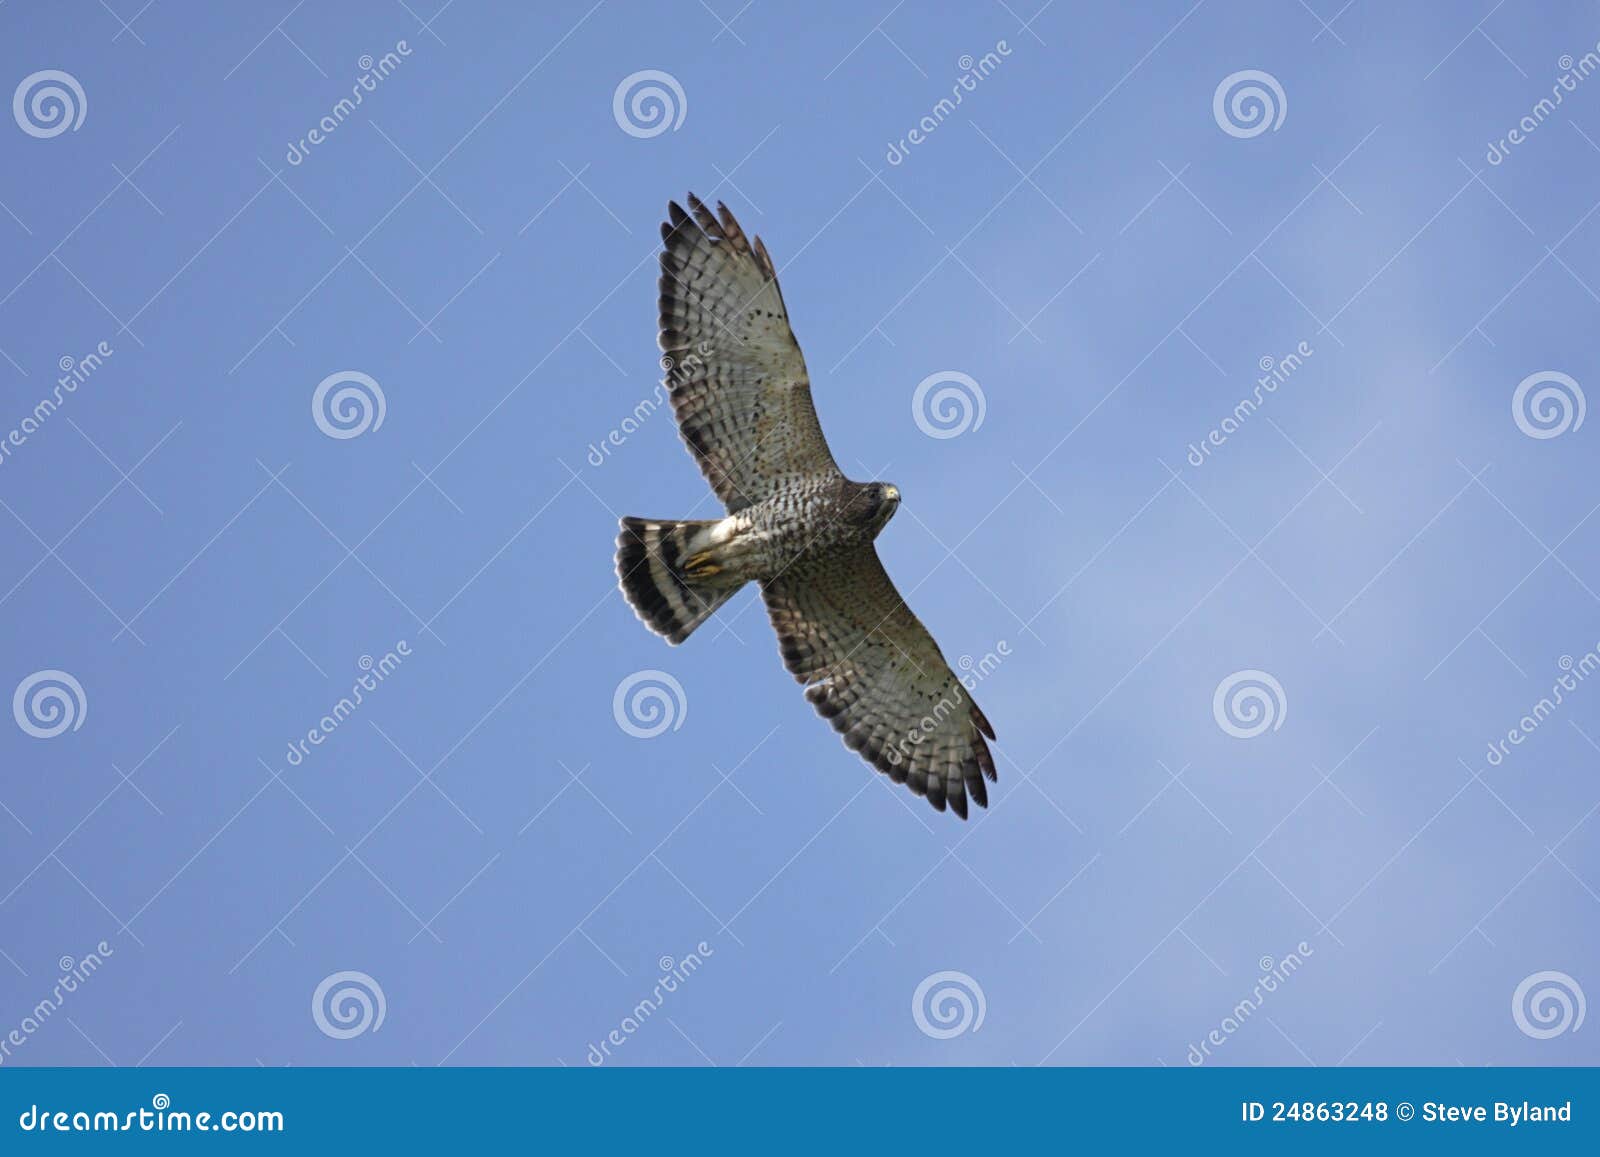 broad-winged hawk in flight